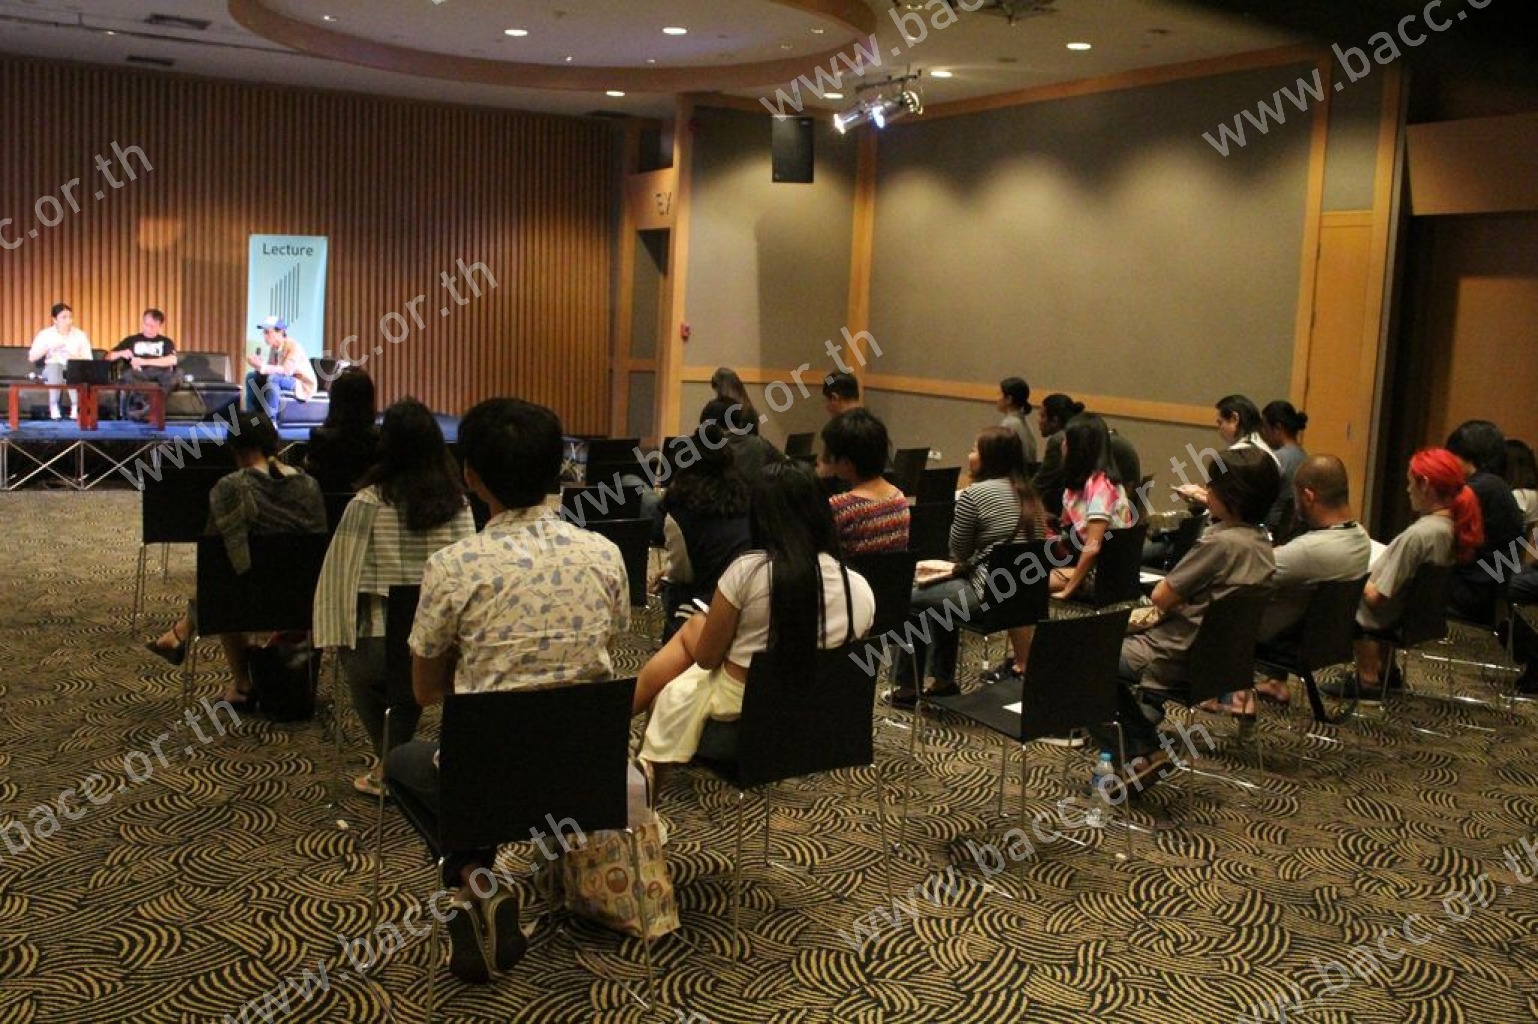 กิจกรรมการศึกษานิทรรศการ “ไทยเนตร” : Artist Forum #1 : “ศิลปินไทยในเวทีนานาชาติ : กรณีศึกษาหอศิลป์ร่วมสมัย Saatchi”